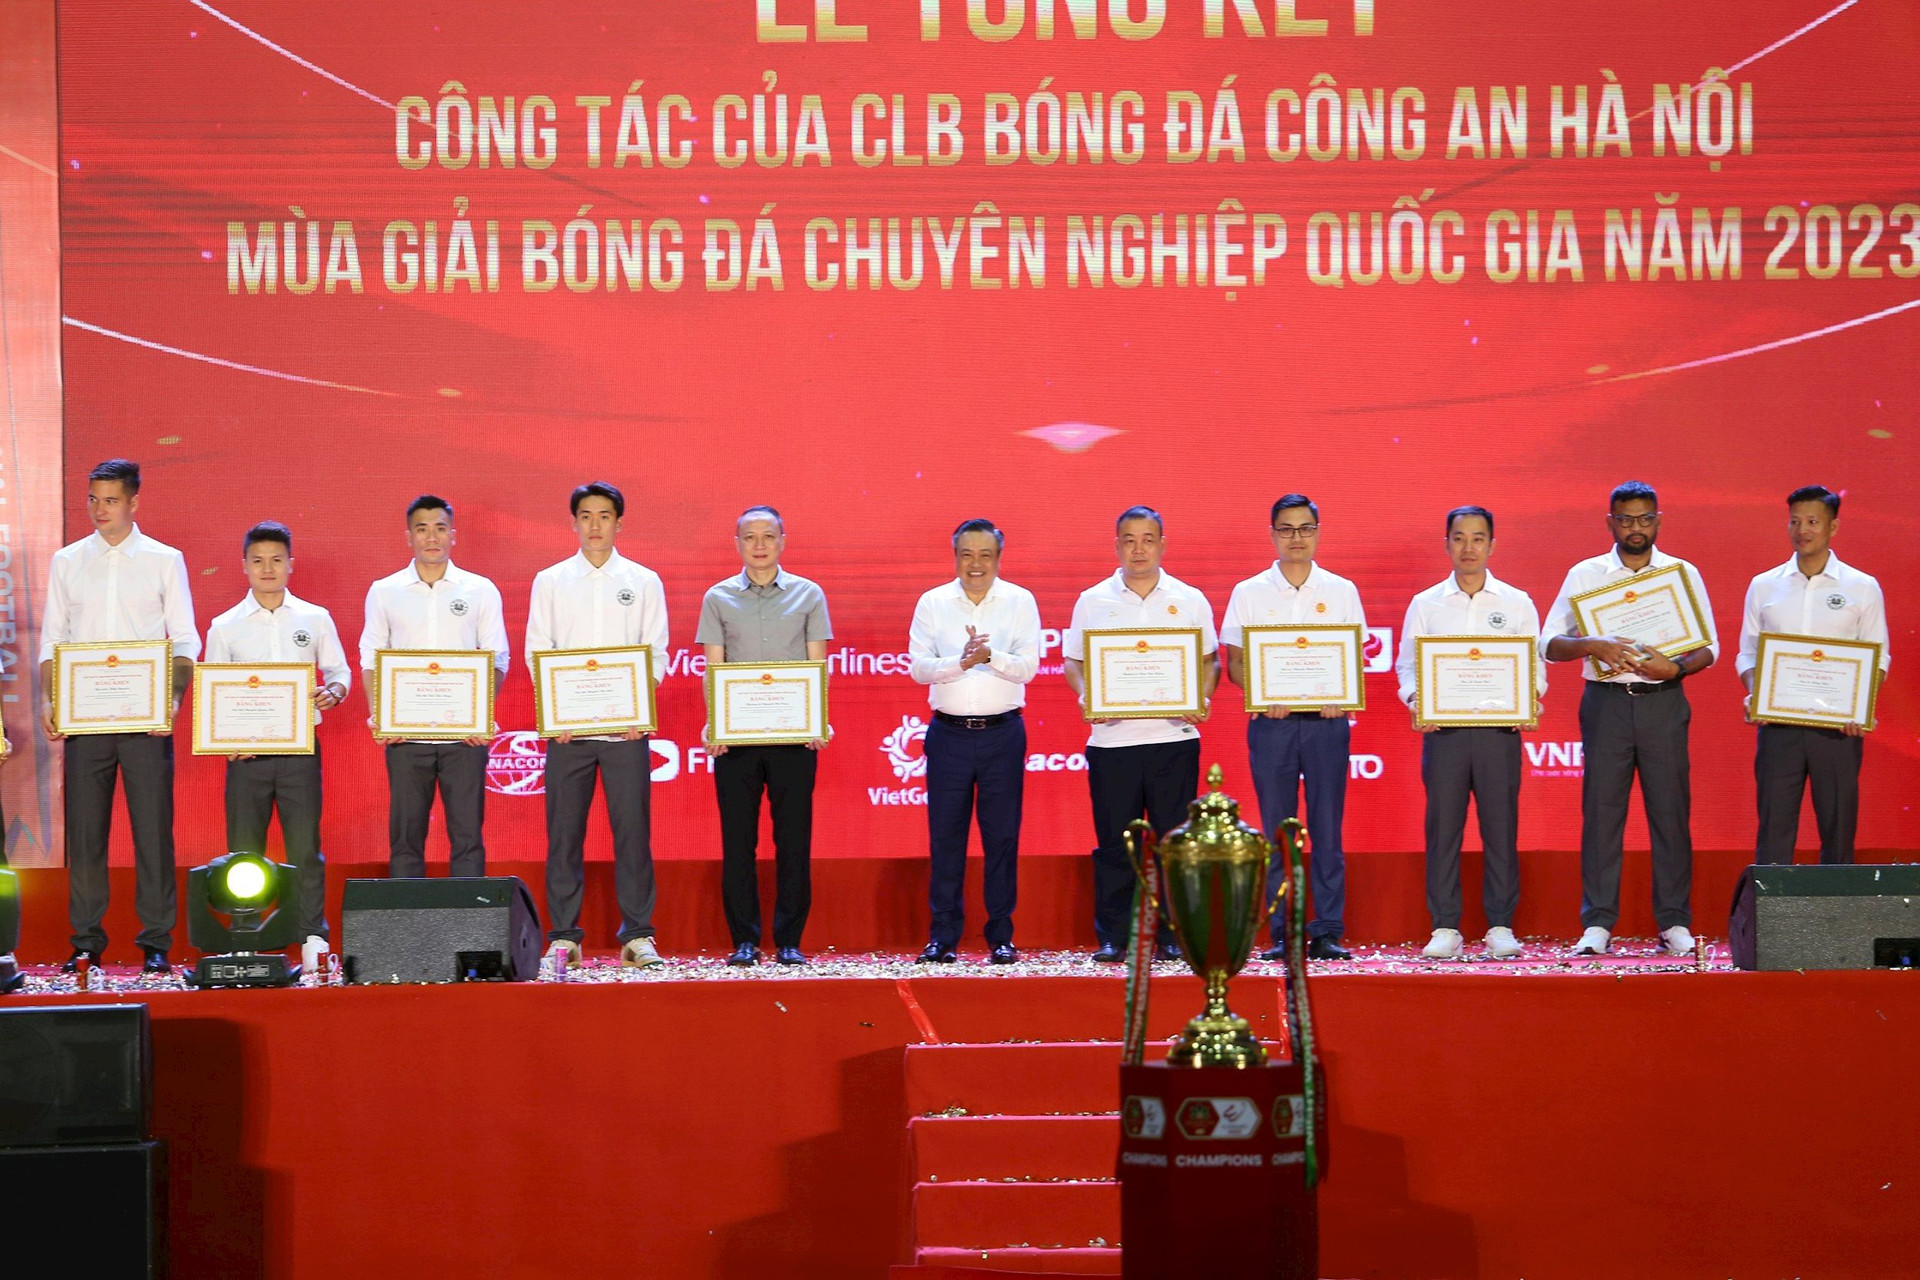 Quang Hải, Filip Nguyễn nhận bằng khen của lãnh đạo CLB Công an Hà Nội - Ảnh 2.